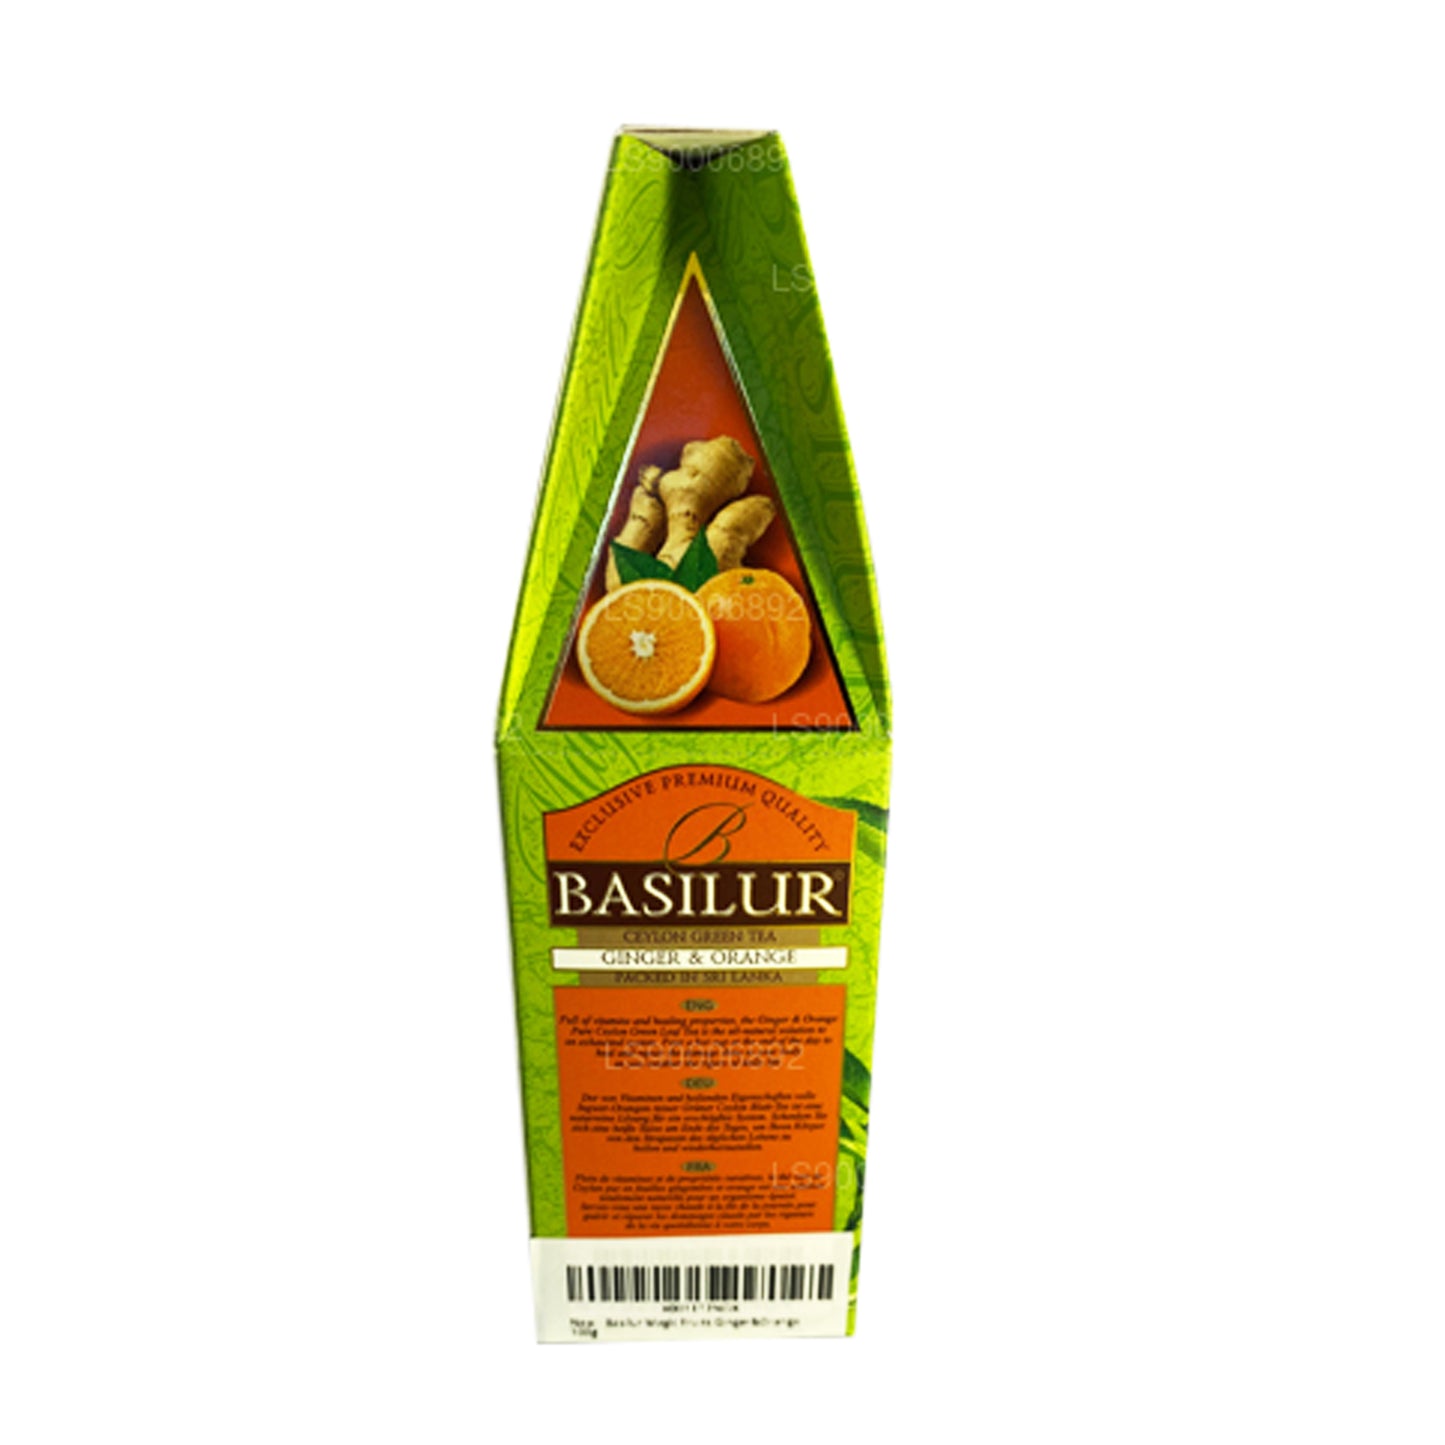 Basilur Magic Green Ginger & Orange